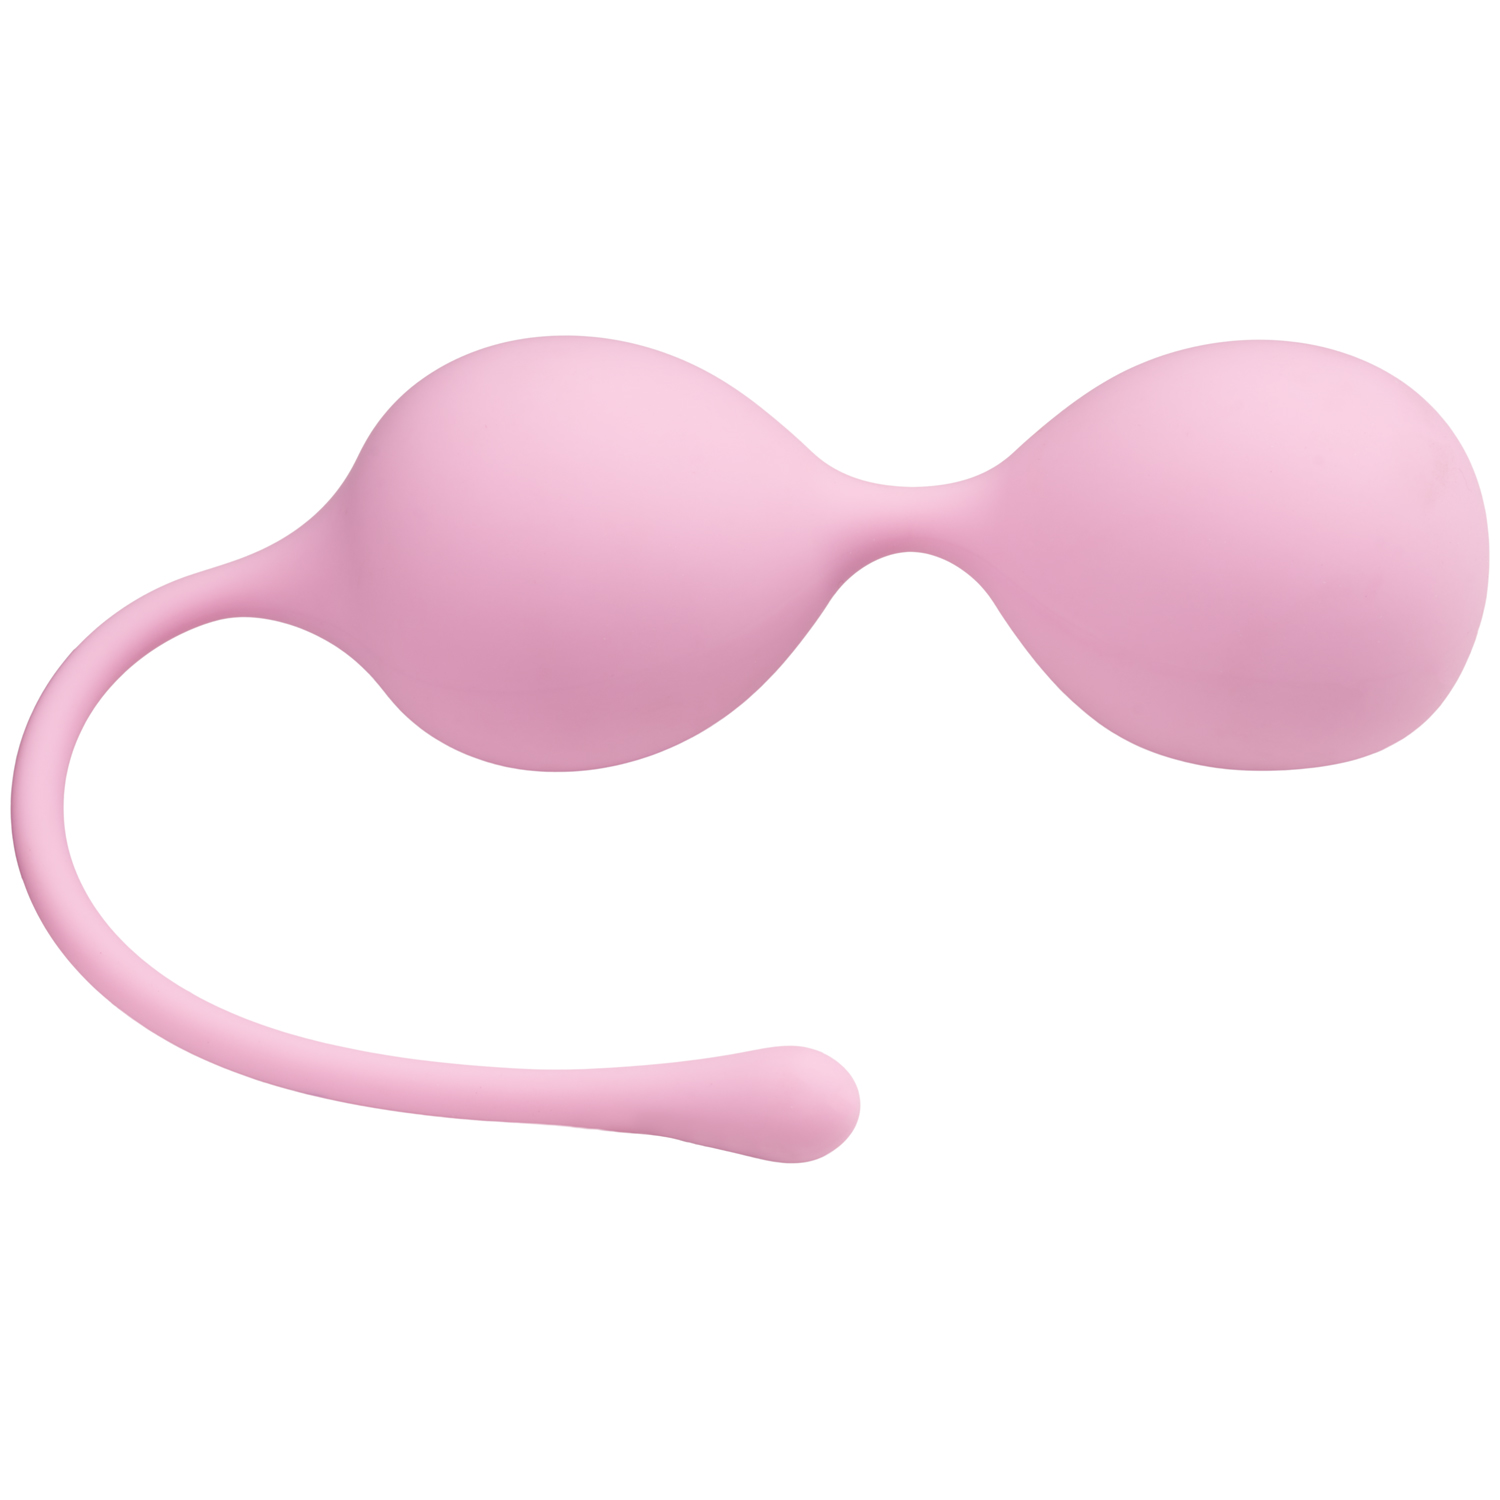 Sinful Playful Pink Dubbla Knipkulor - Ljusrosa | Favoriter//REA för kvinnor//REA för kvinnor//Kvinnor//Knipkulor & Geishakulor//Advanced Knipkulor//REA//Sinful//3 för 249:-//Hon | Intimast